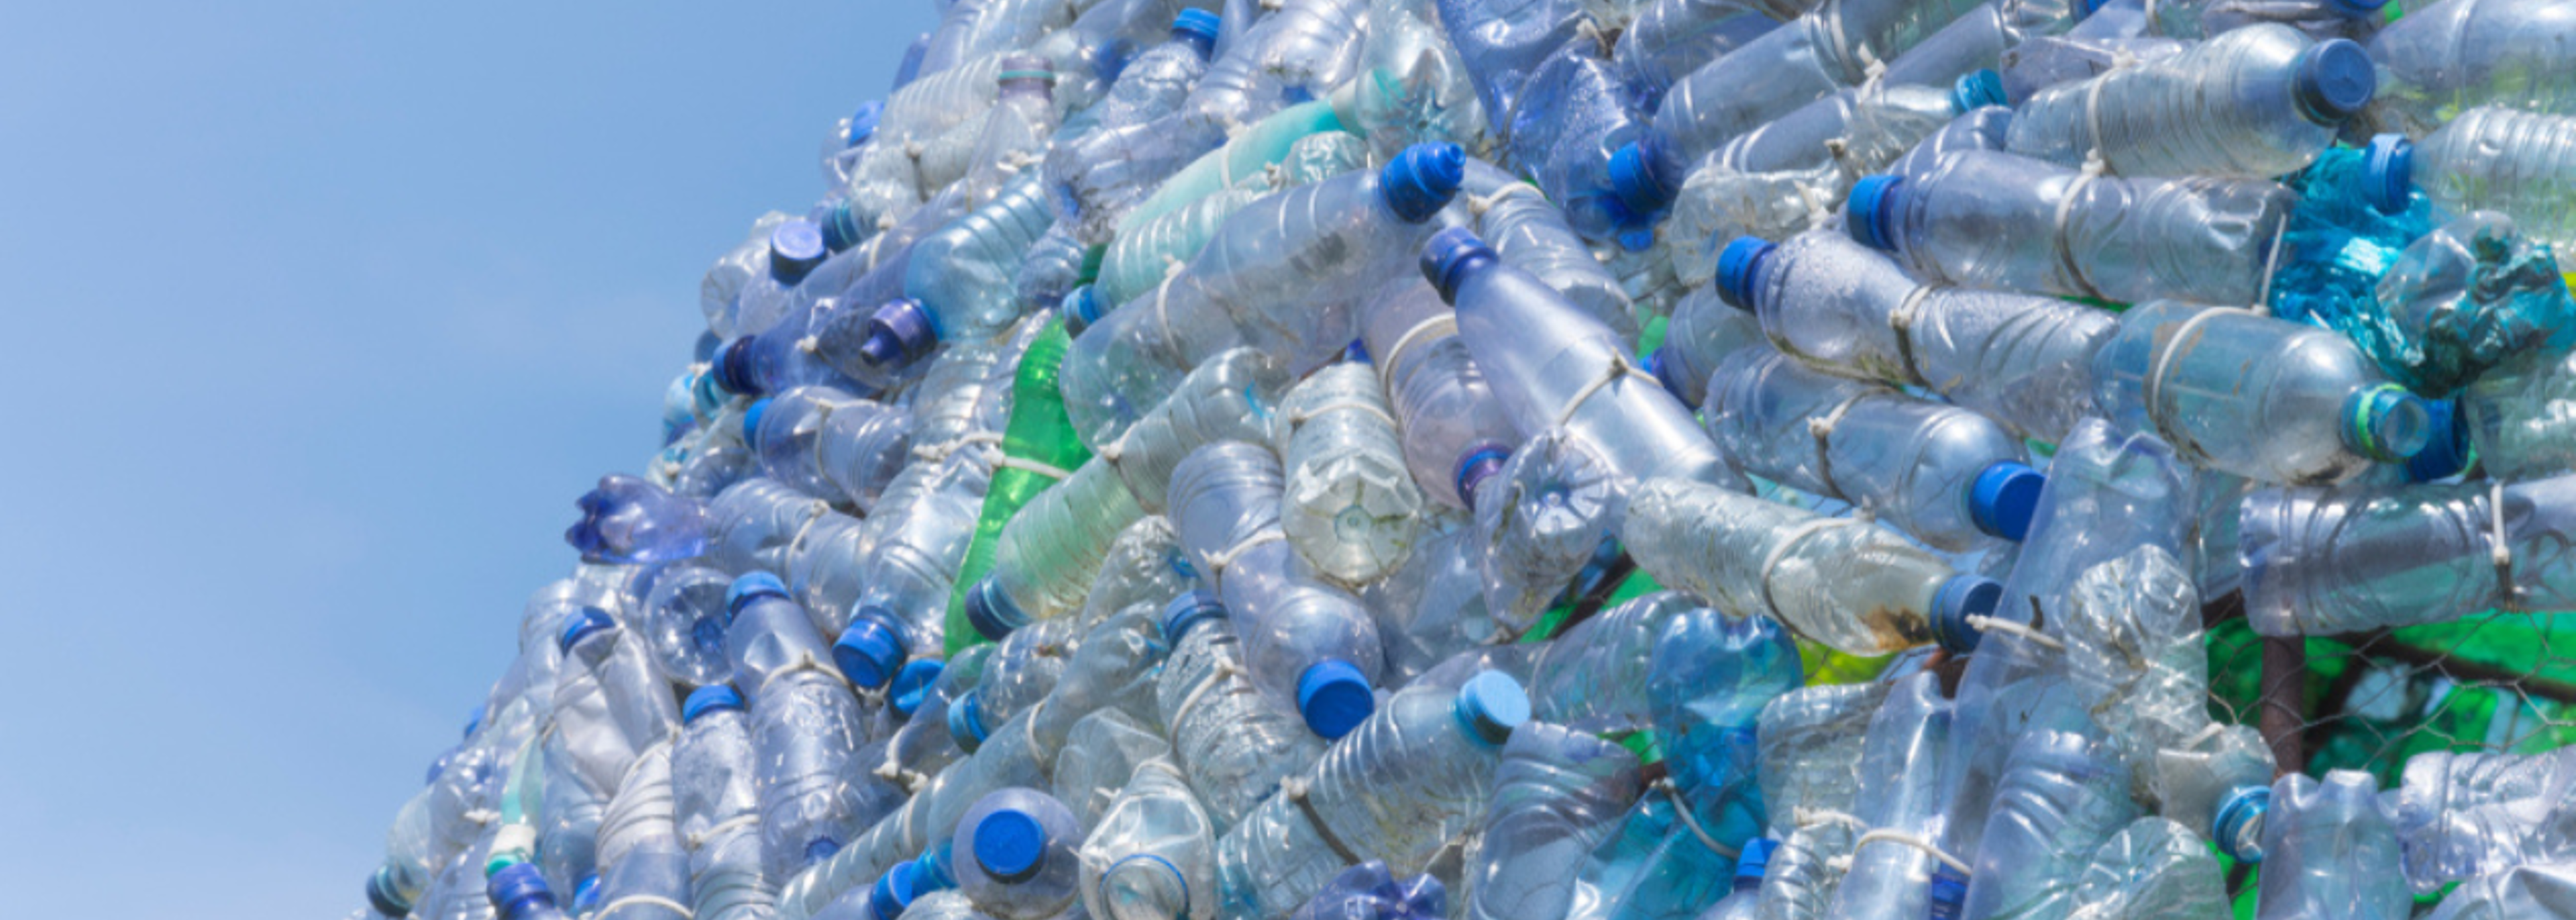 New report urges UK to reduce plastic consumption